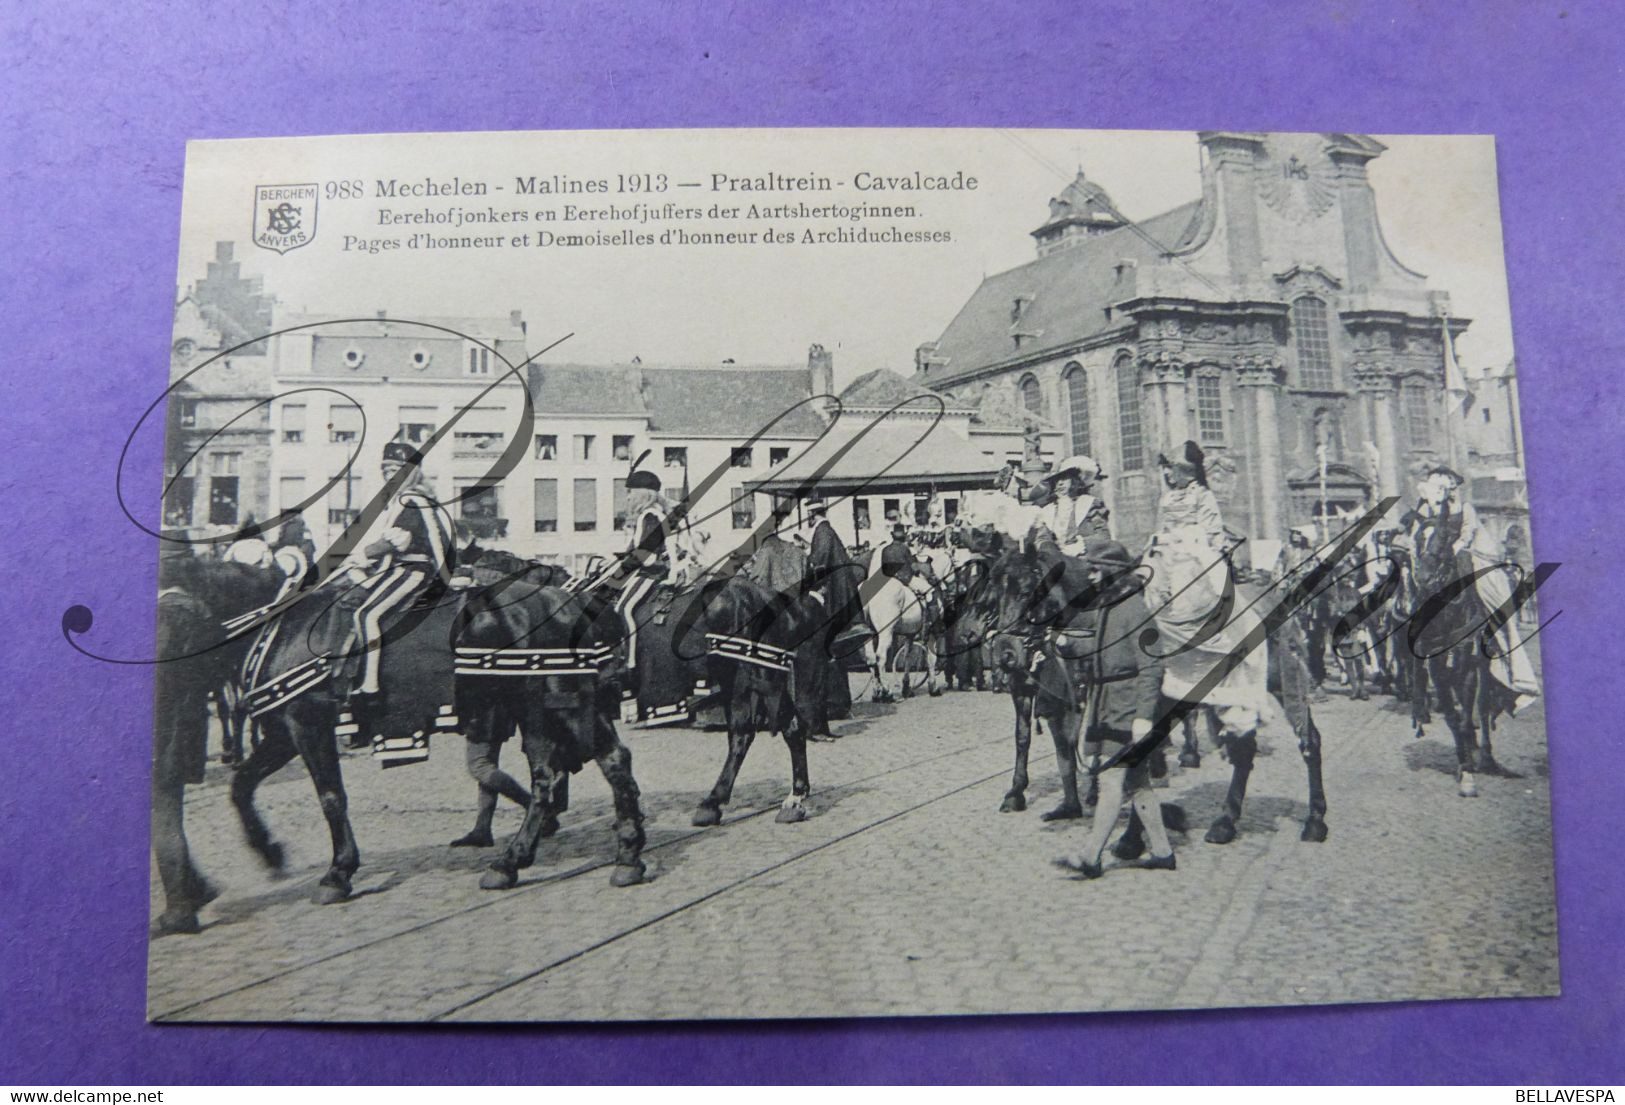 Mechelen 1913 Regionale Folklore stoet lot x 18 cpa  uitg. E.S. Berchem